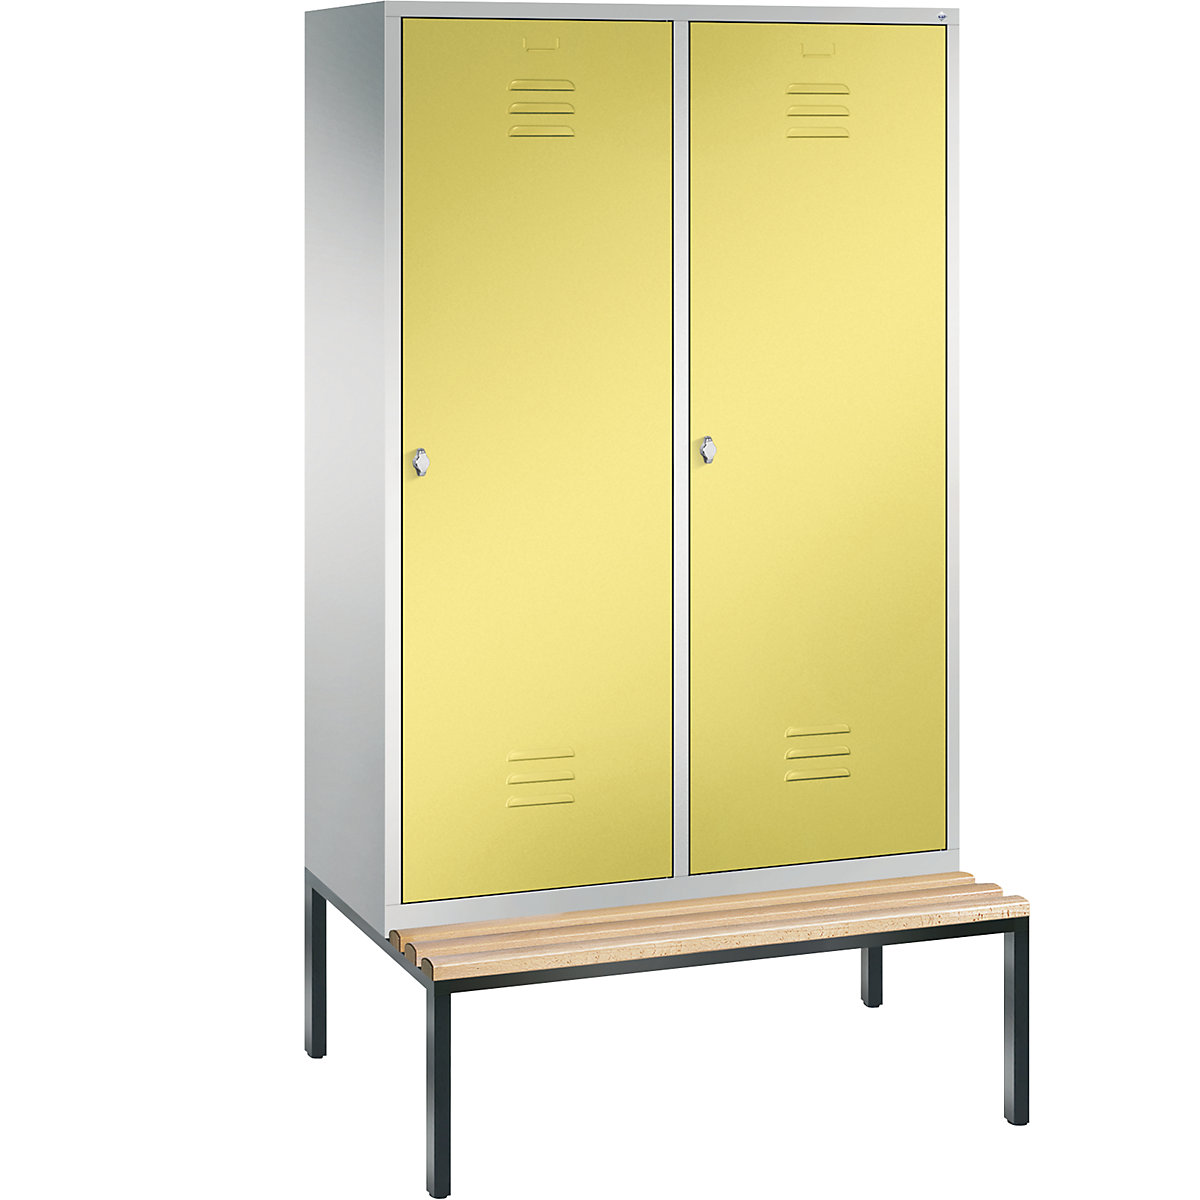 C+P – Armario guardarropa CLASSIC con banco integrado debajo y puerta sobre 2 compartimentos, 4 compartimentos, anchura de compartimento 300 mm, gris luminoso / amarillo azufre